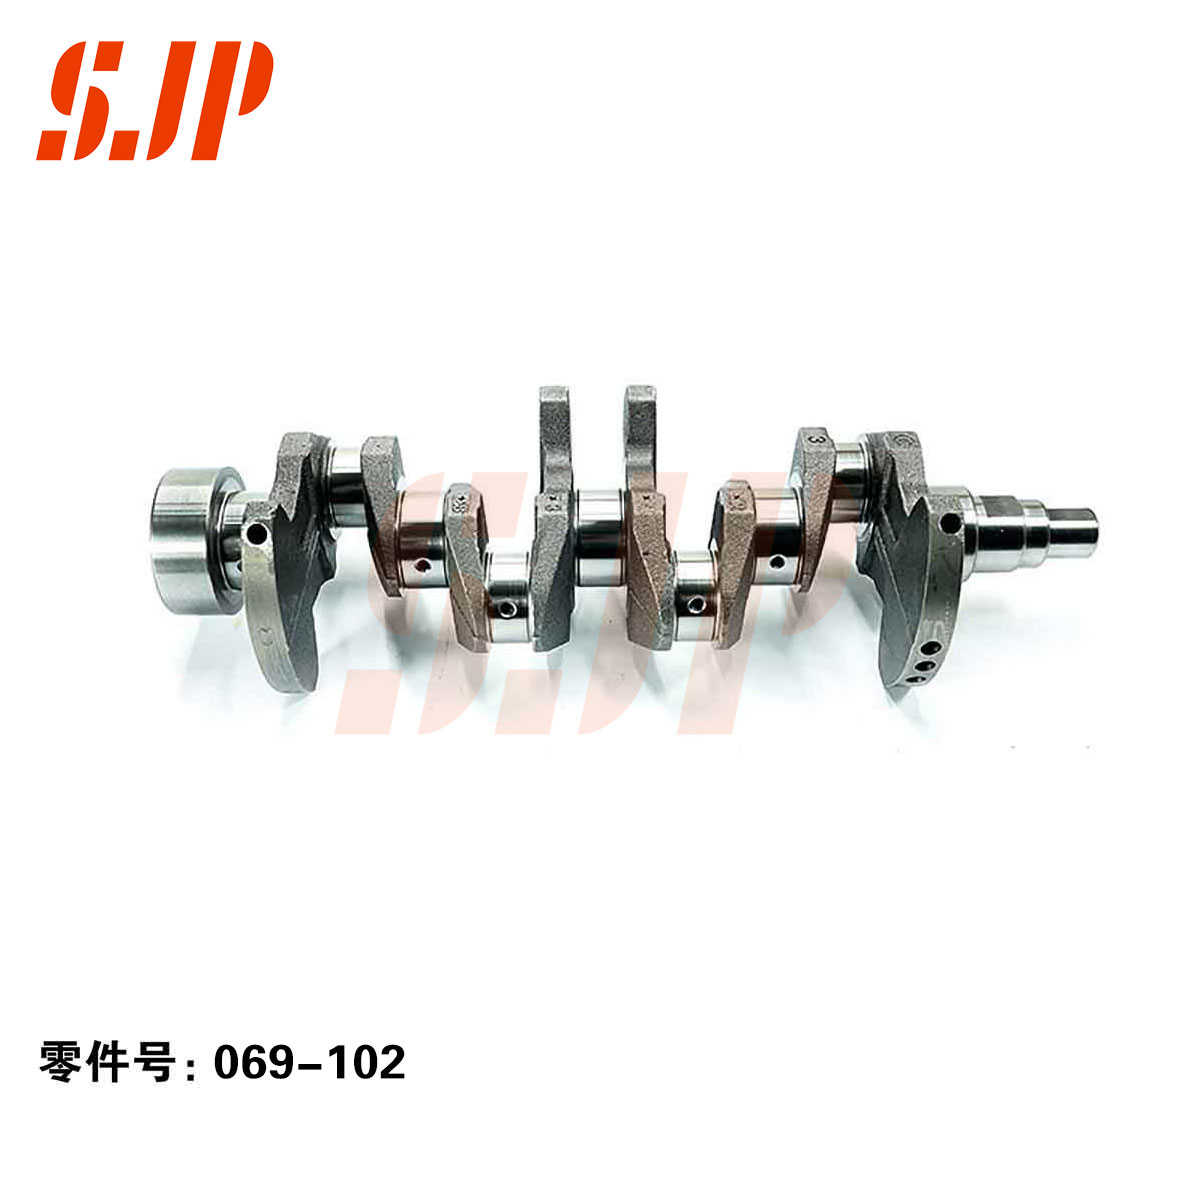 SJ-069-102 Crankshaft For Changan Auto 4G15/4G13/Mitsubishi 4G15T